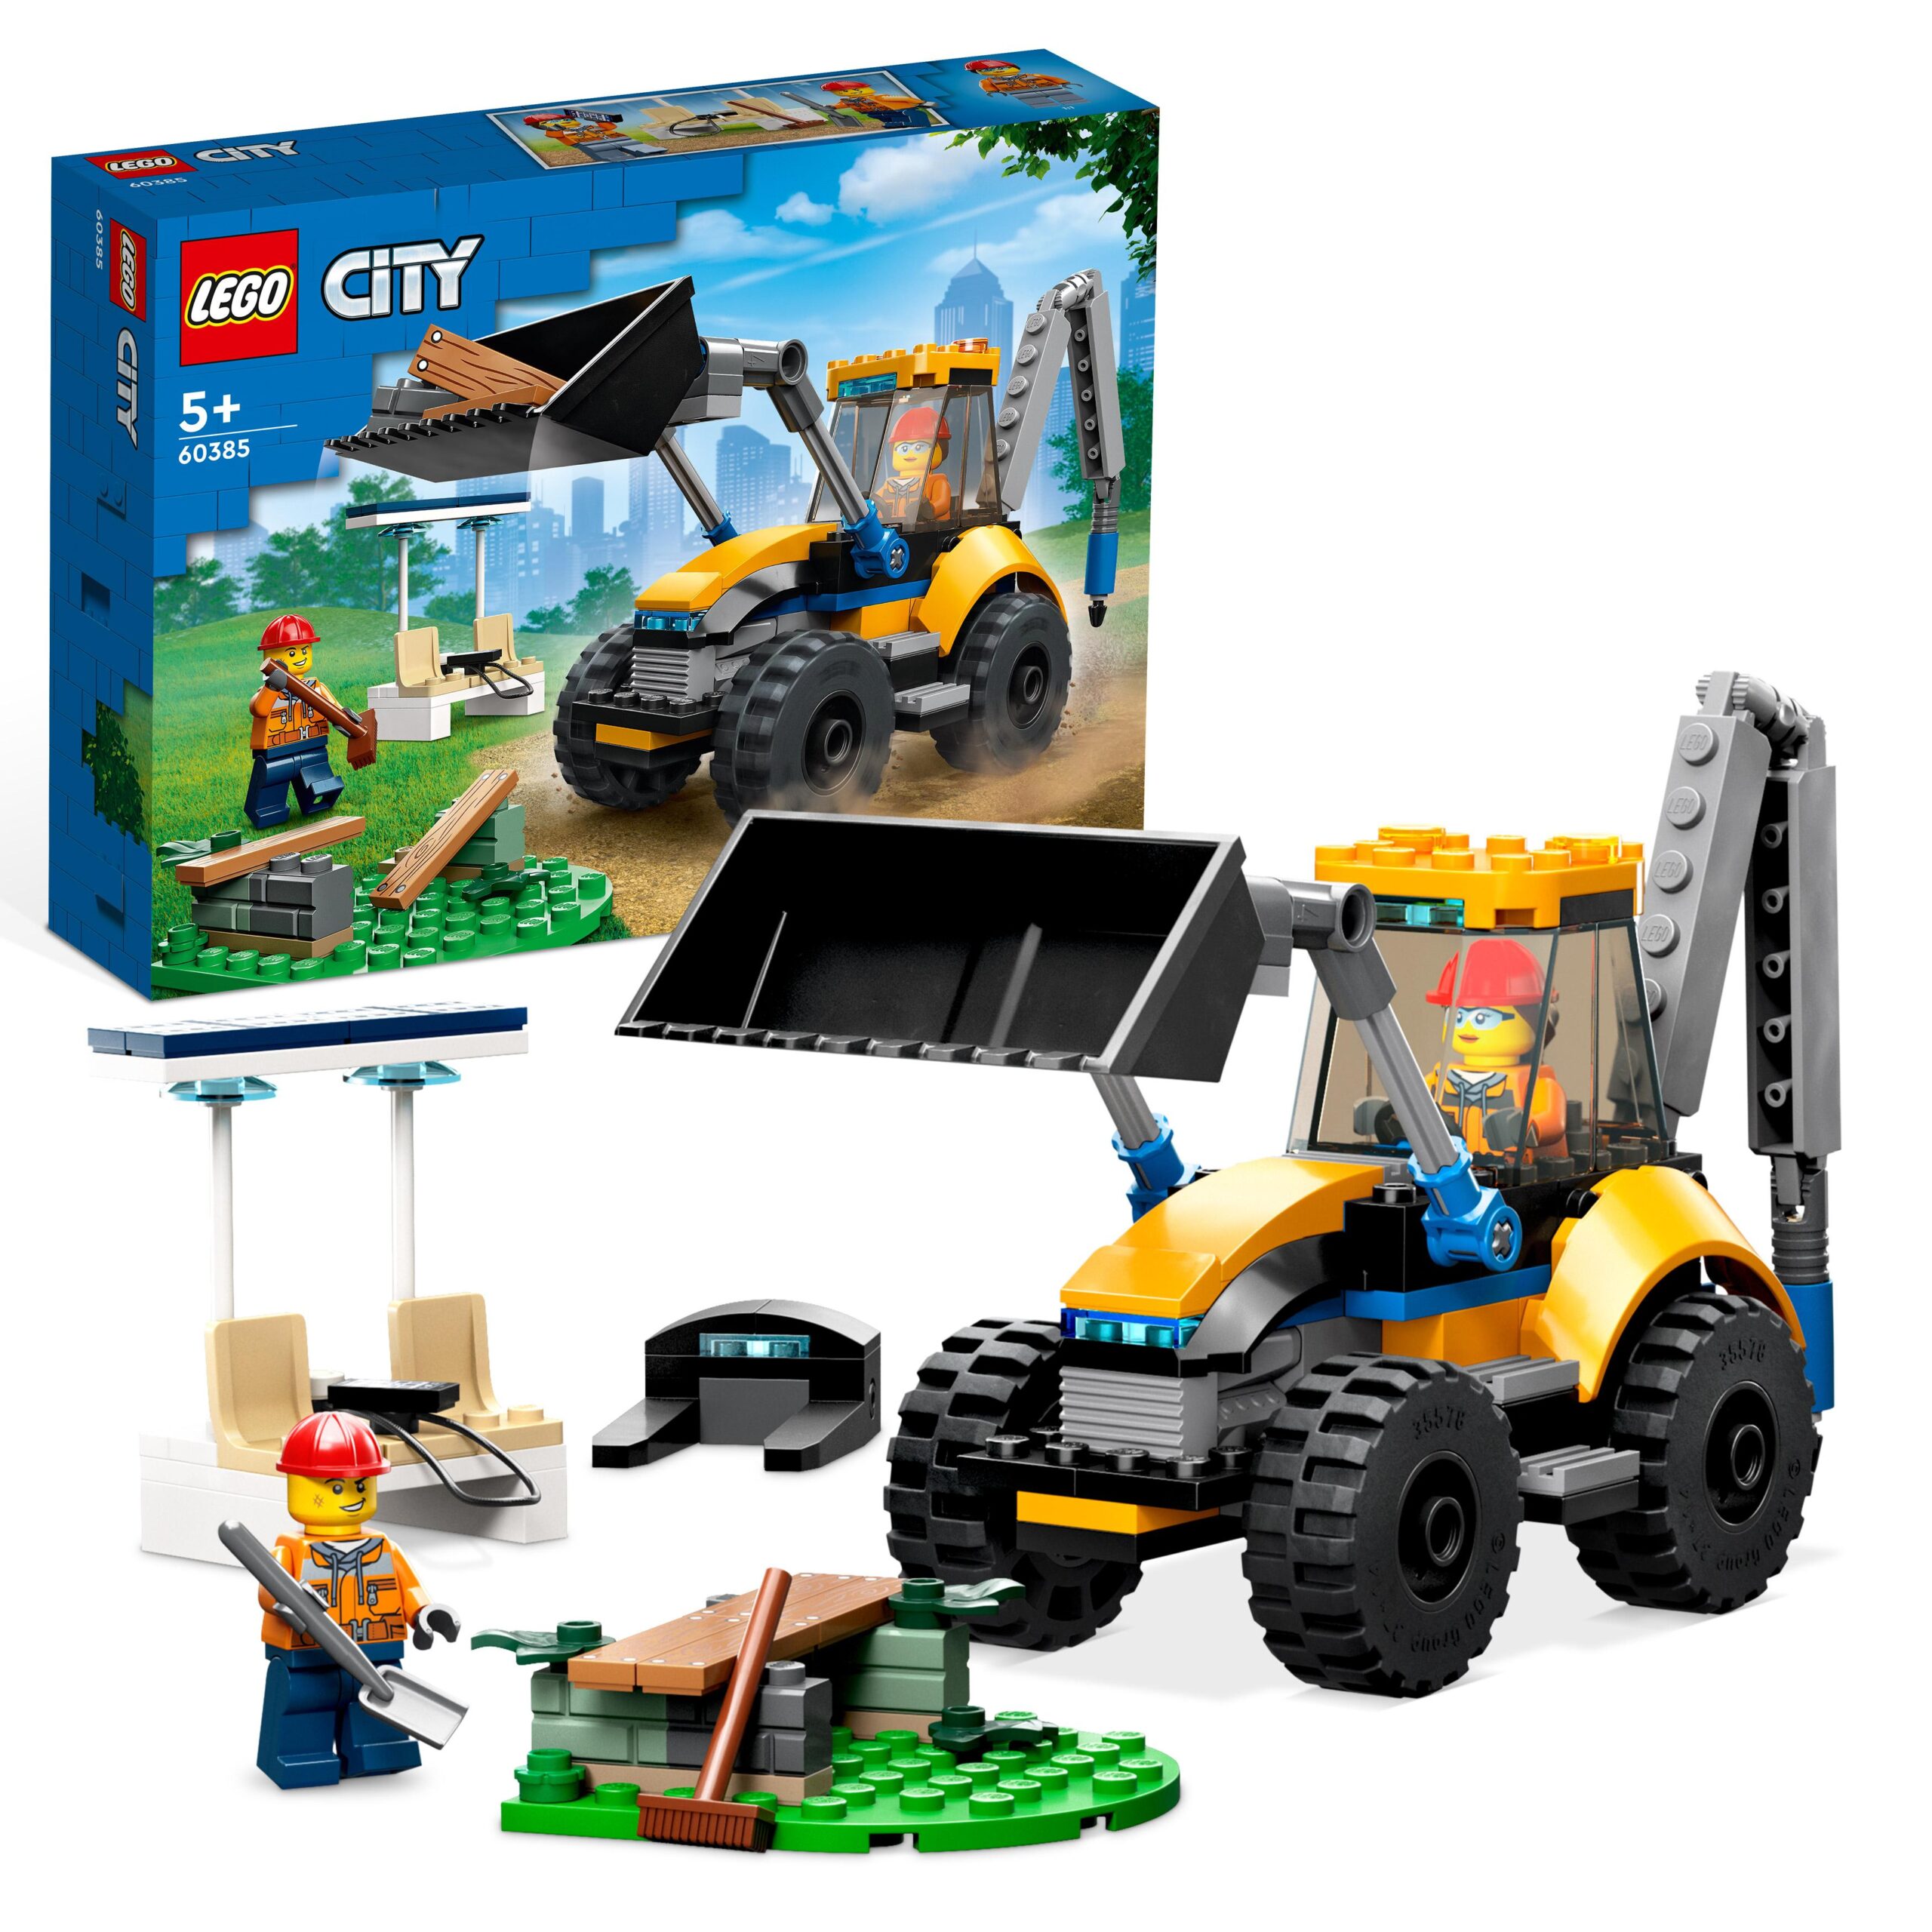 Lego city 60385 scavatrice per costruzioni, escavatore giocattolo